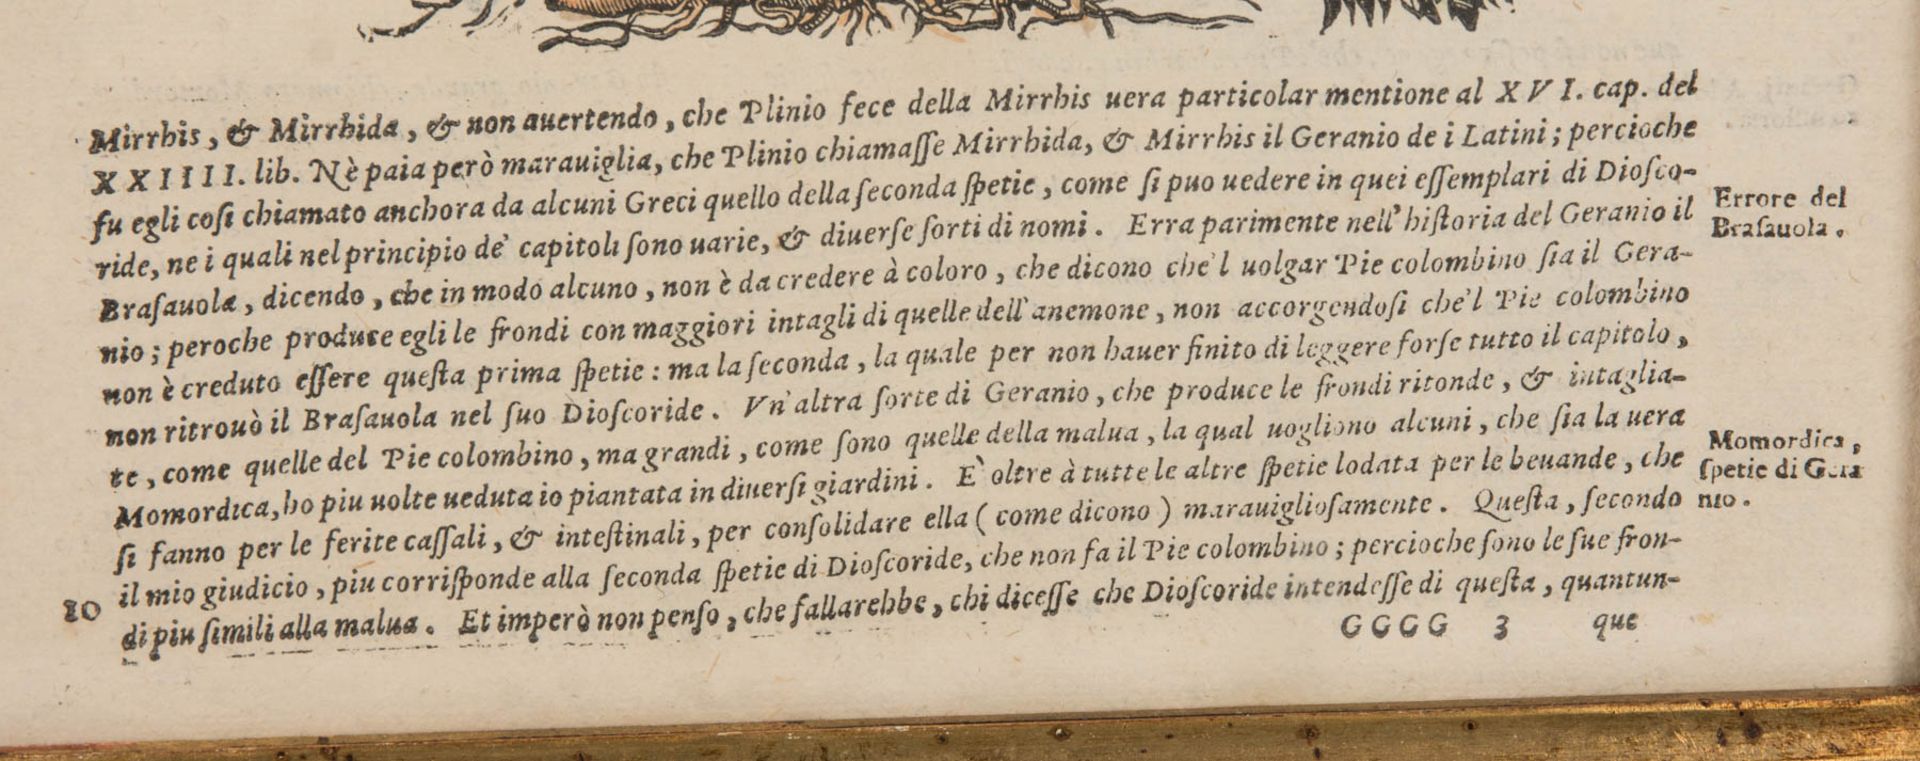 Schöne Pflanzendarstellung, Blutige Geranie, Kolorierter Kuperstich im Imperial-Folio Format. - Bild 3 aus 6